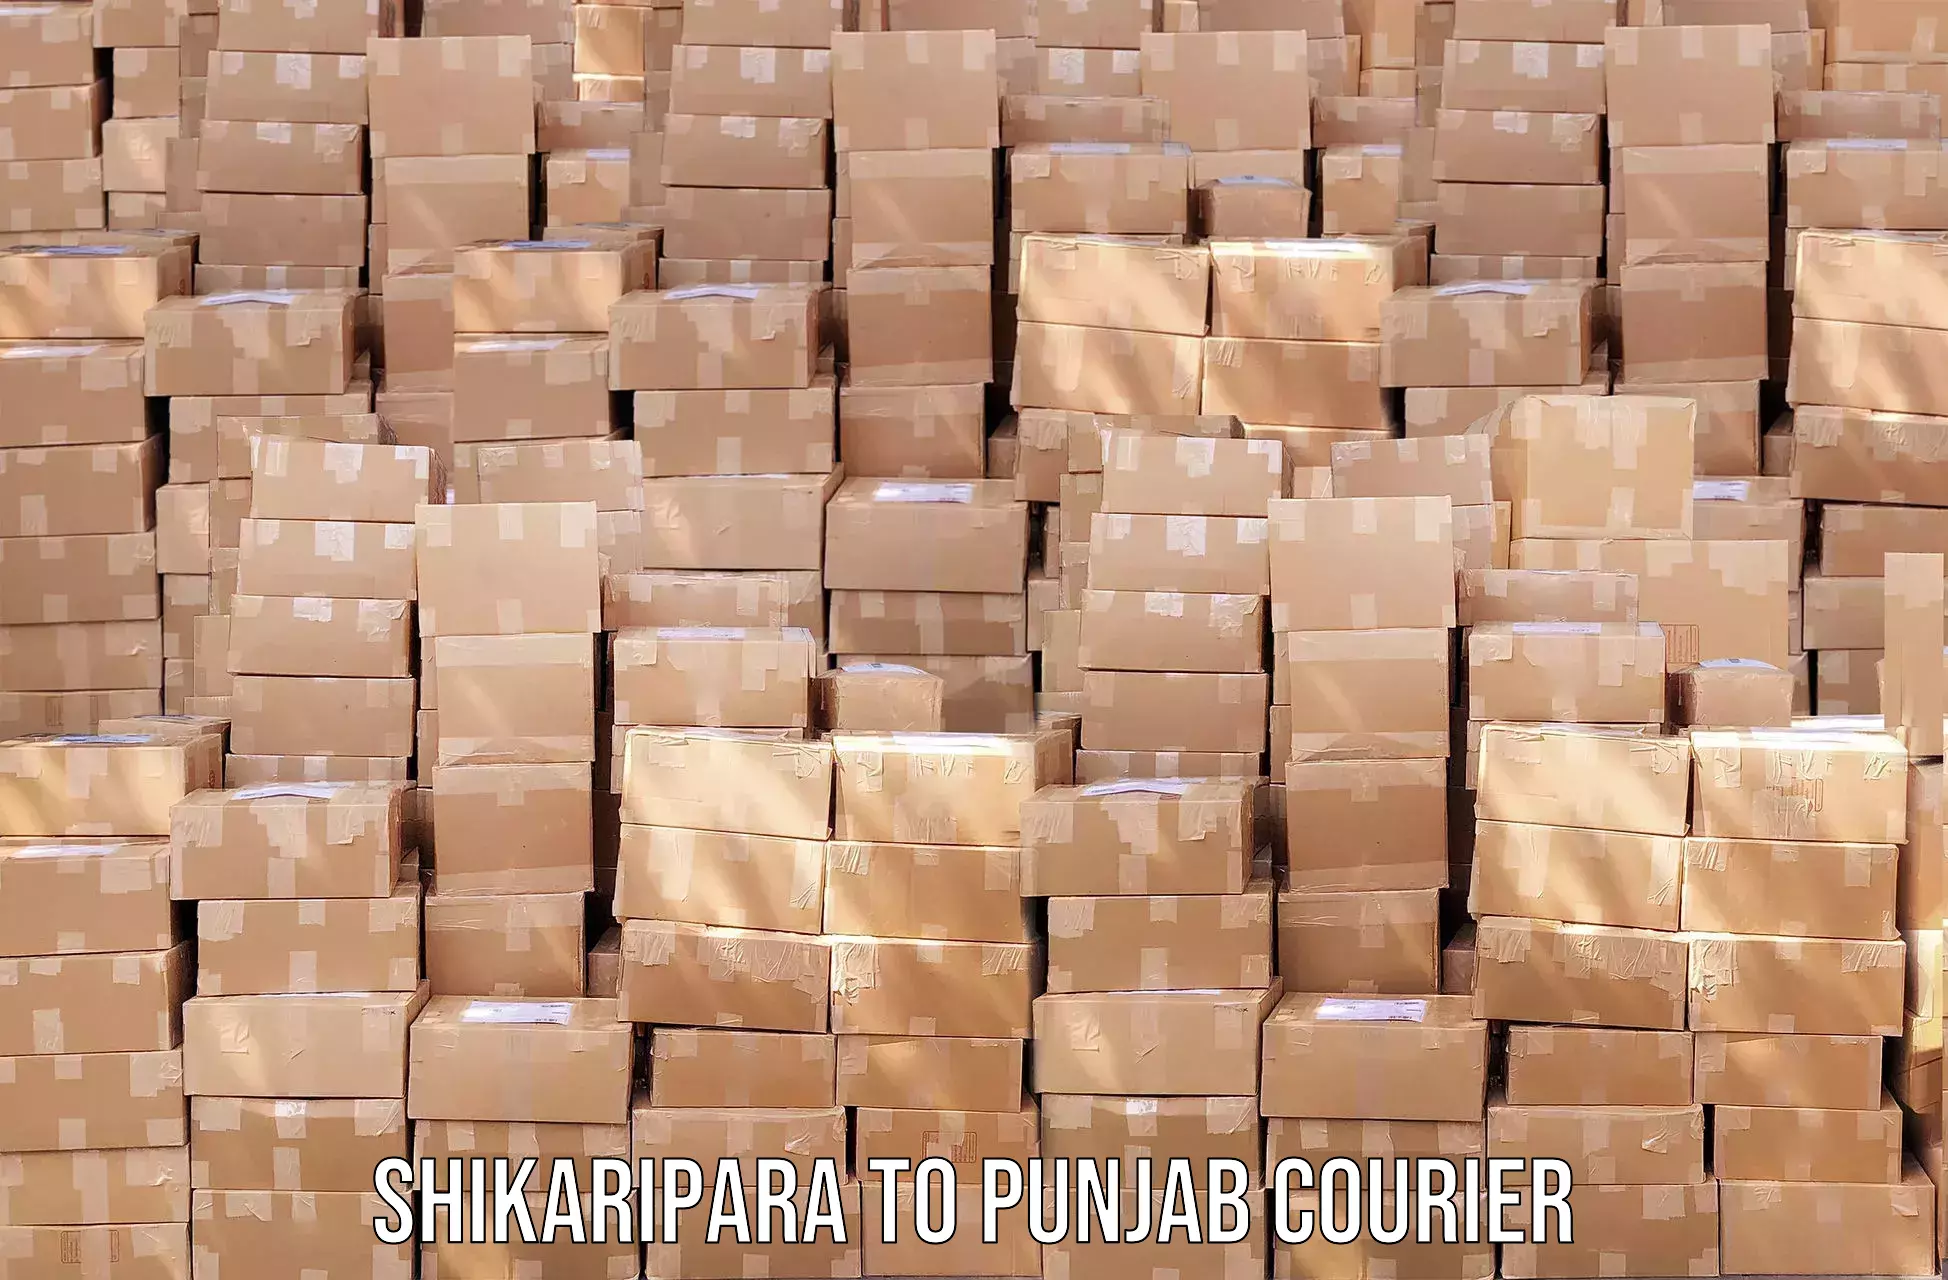 Holiday shipping services Shikaripara to Faridkot